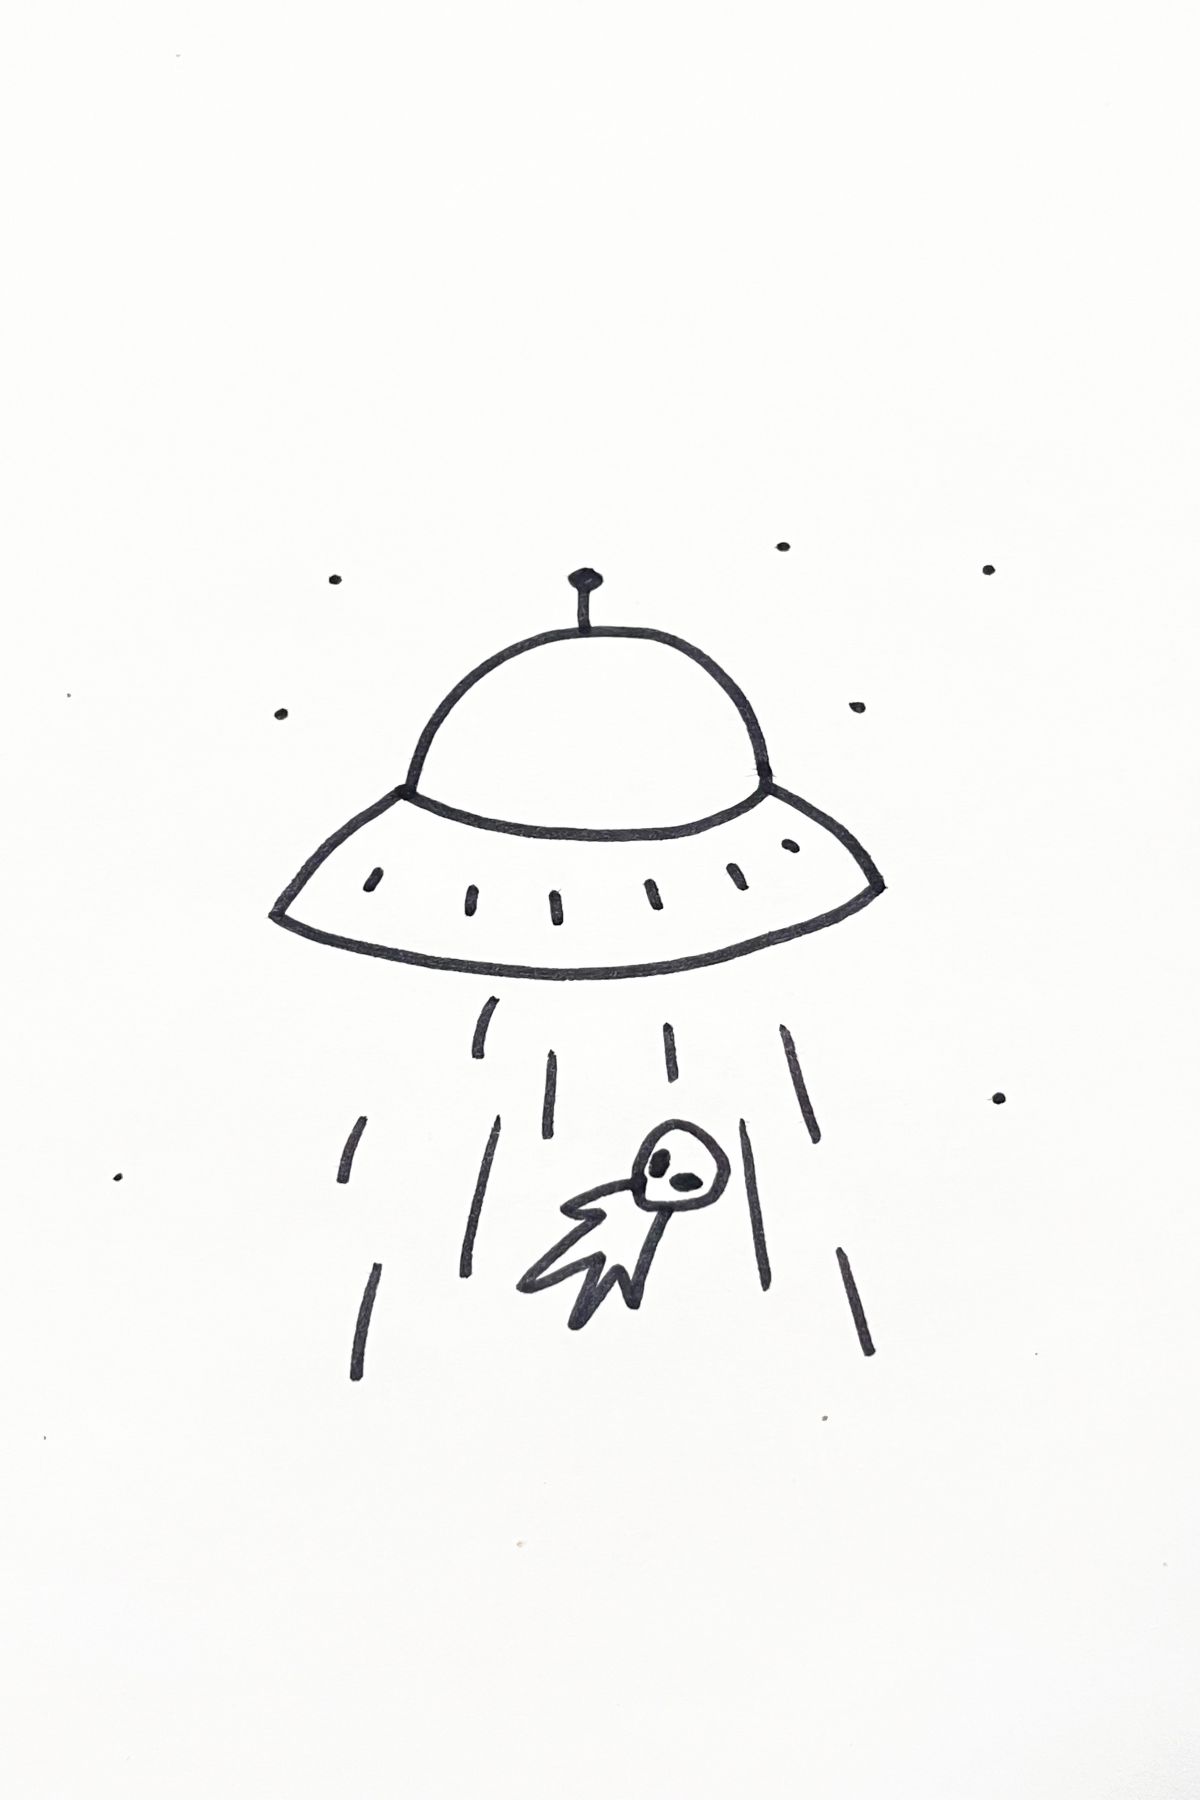 alien drawing idea